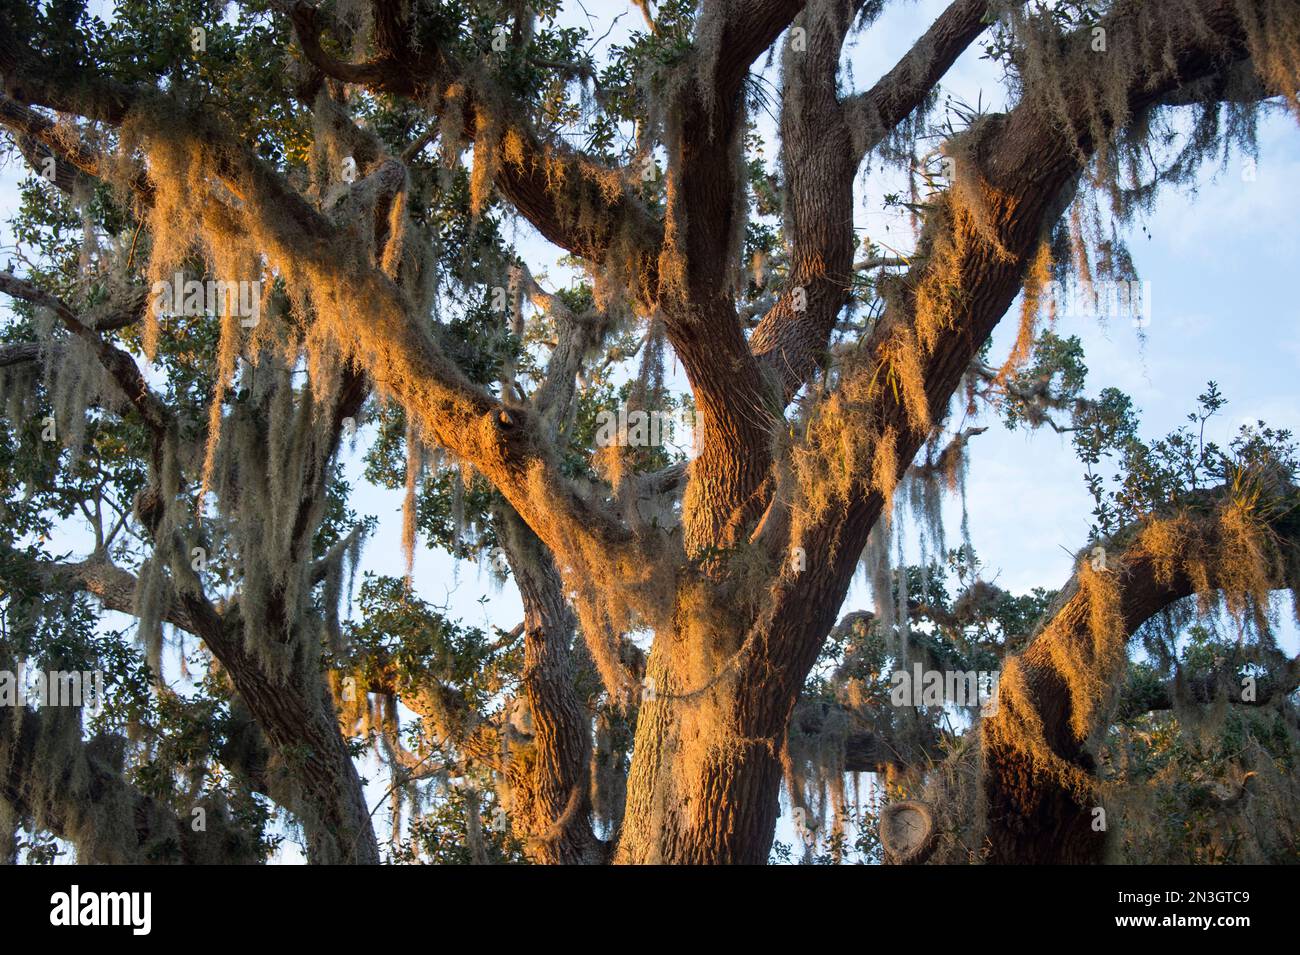 La mousse espagnole, une plante épiphytique, est suspendue dans un chêne vivant; Osprey, Floride, États-Unis d'Amérique Banque D'Images